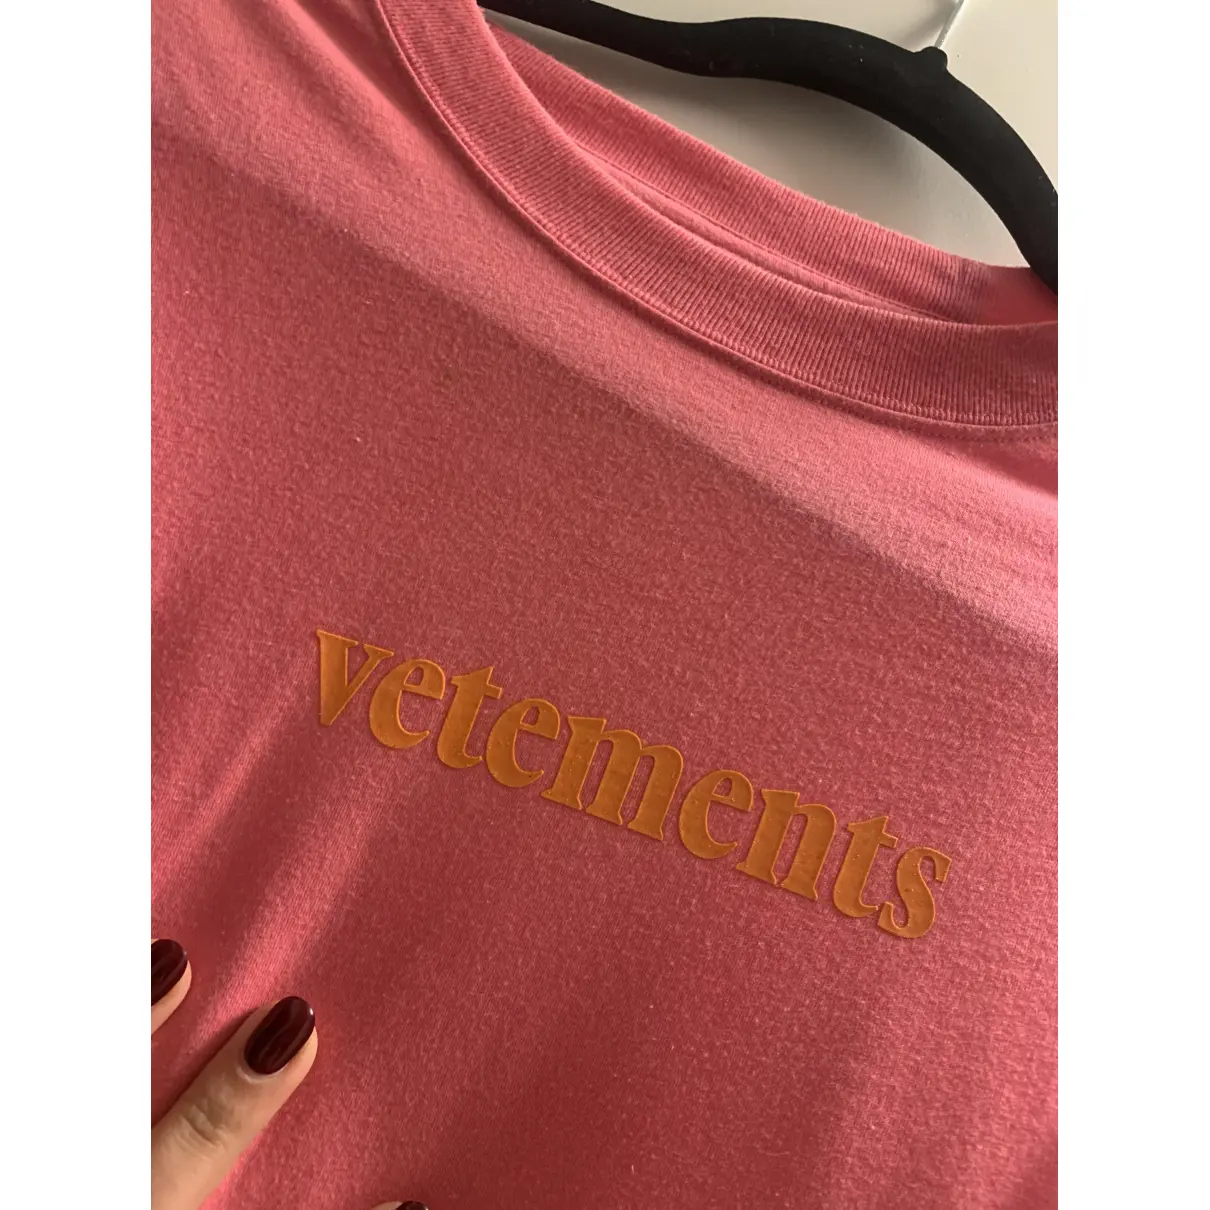 Buy Vetements Pink Cotton Top online